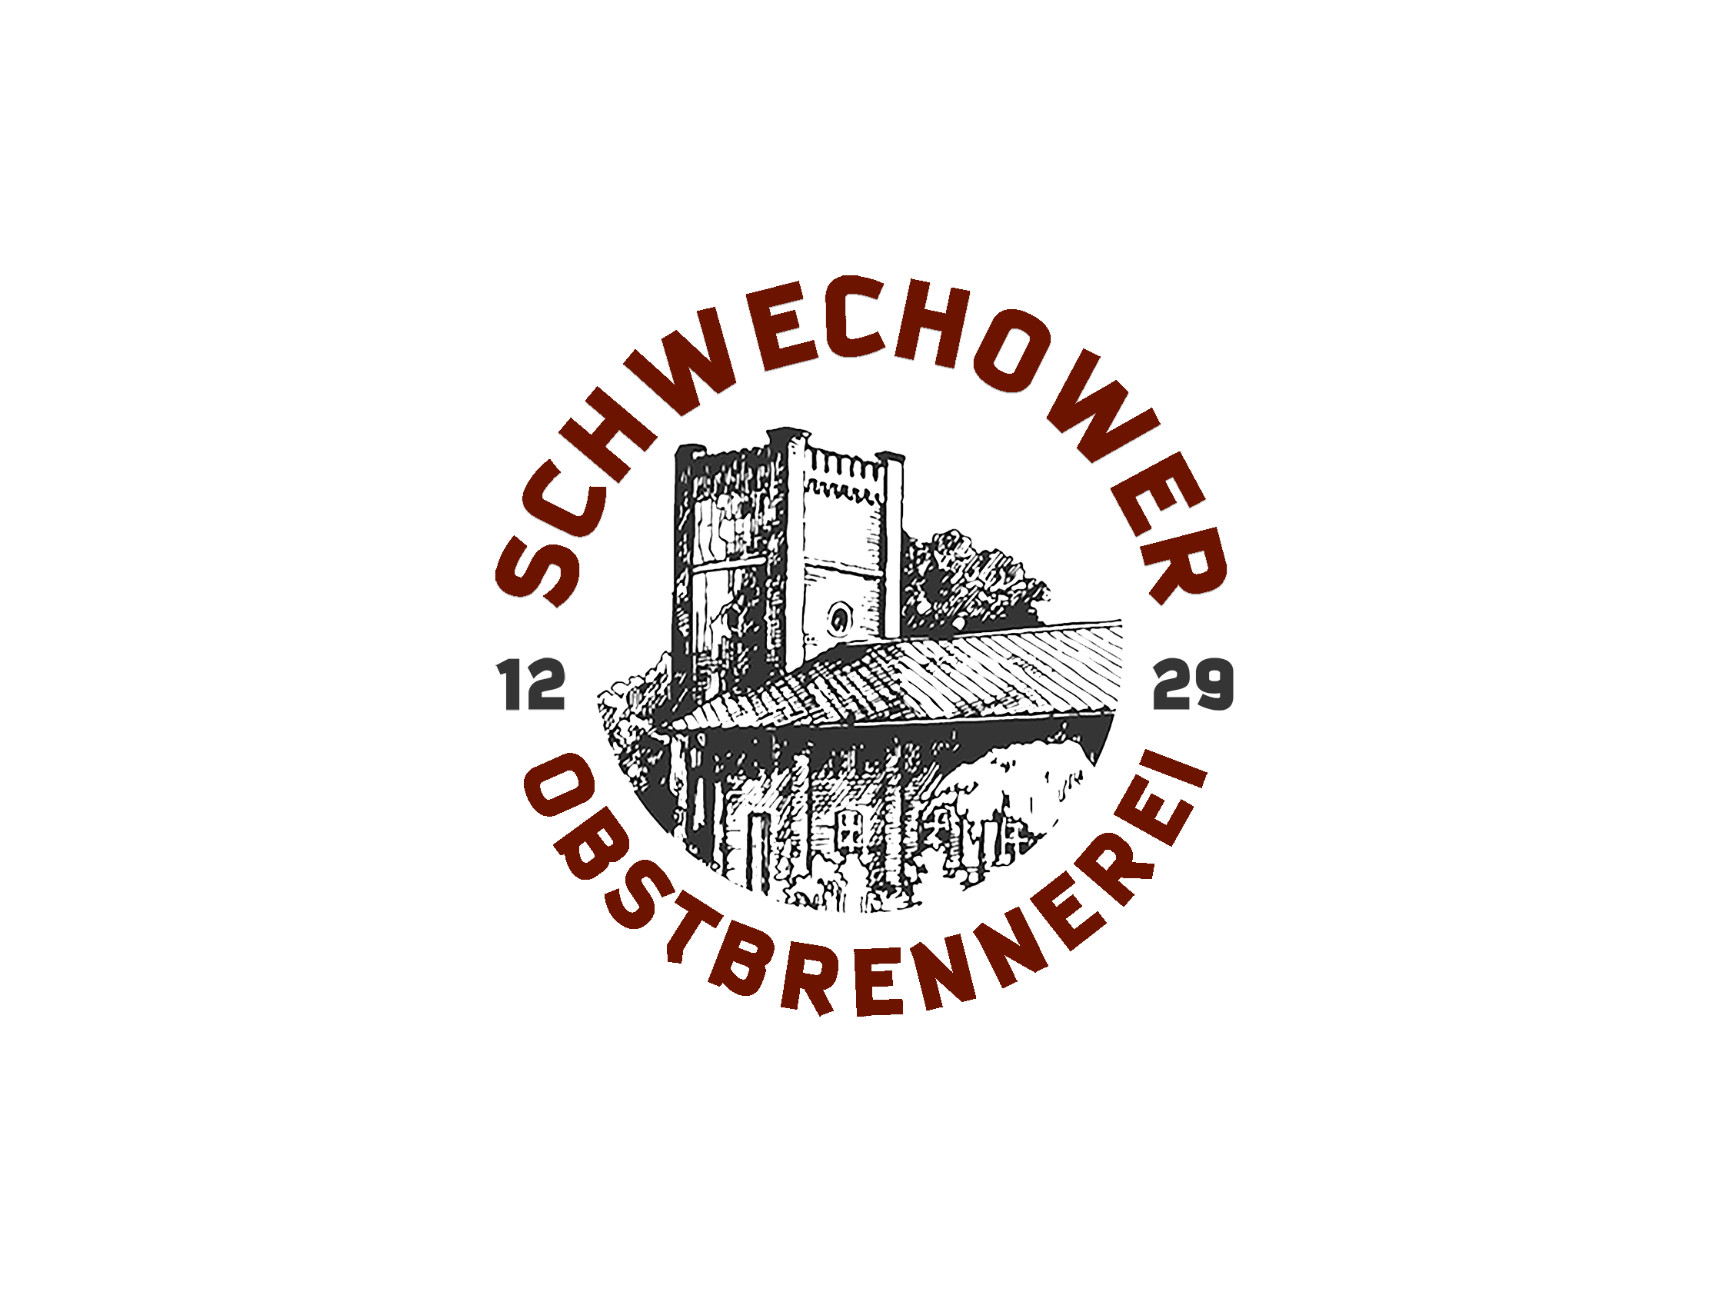 https://schwechower.com/media/image/46/31/53/Schwechower-Obstbrennerei-High-Quality.jpg